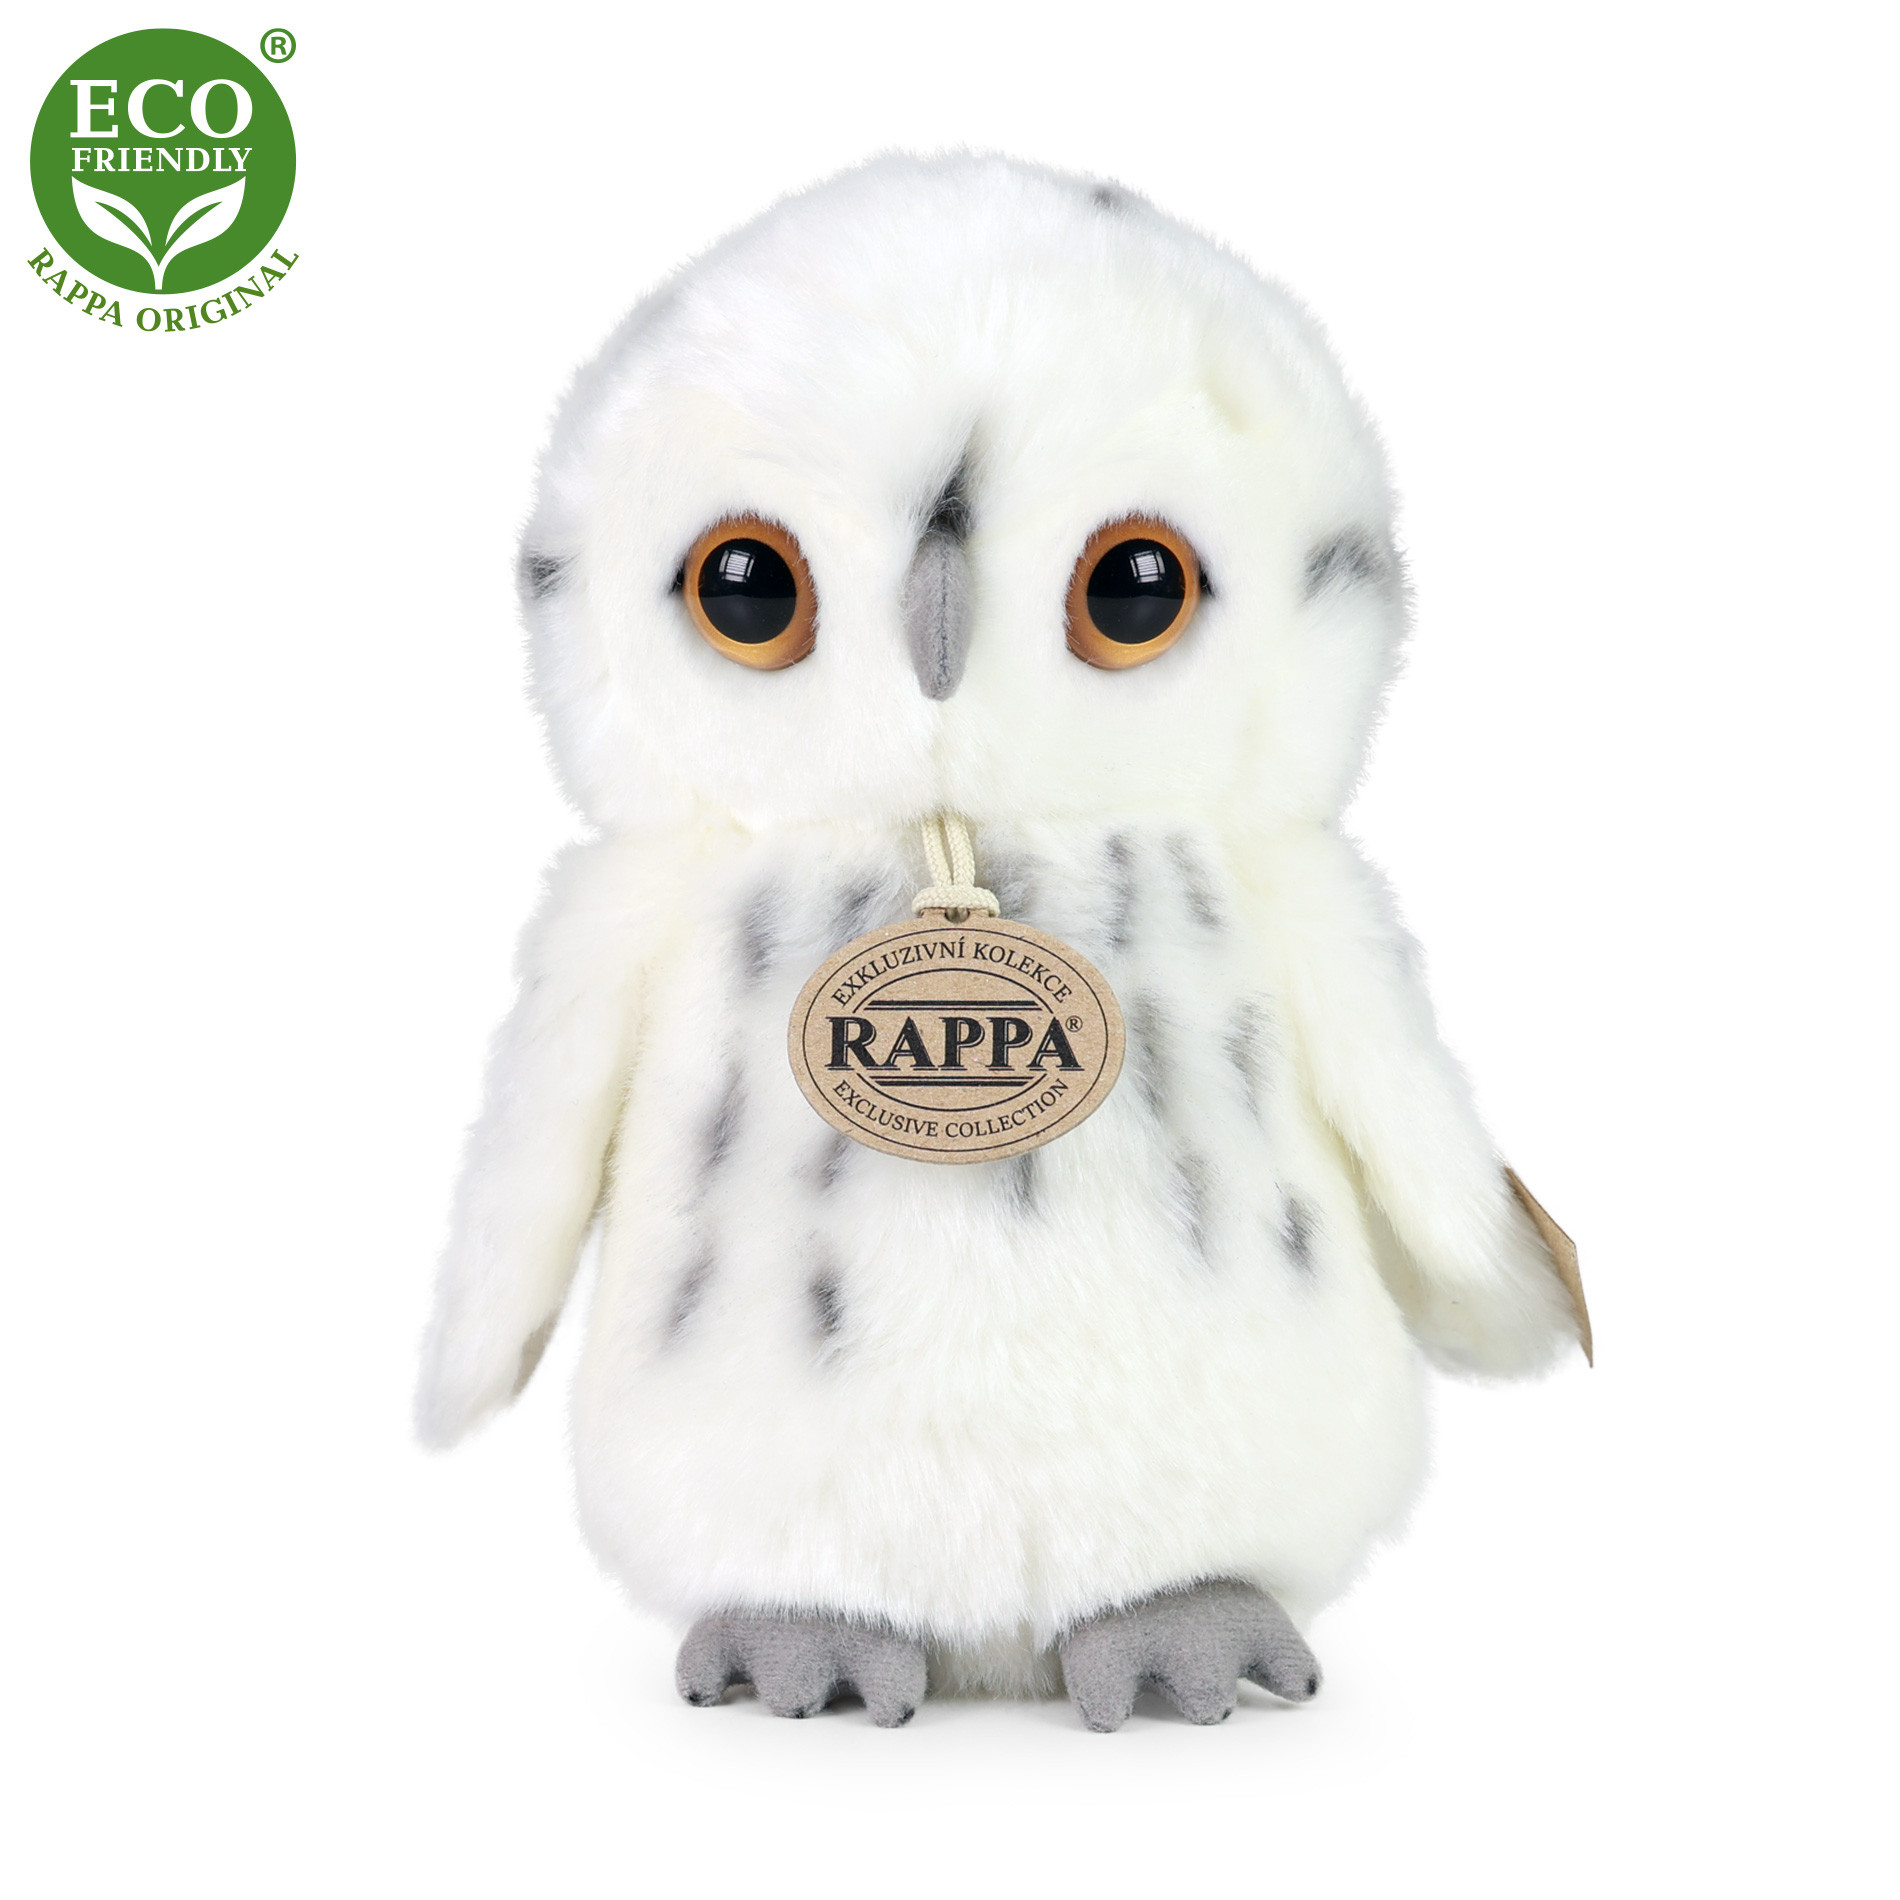 Plush white owl 18 cm ECO-FRIENDLY